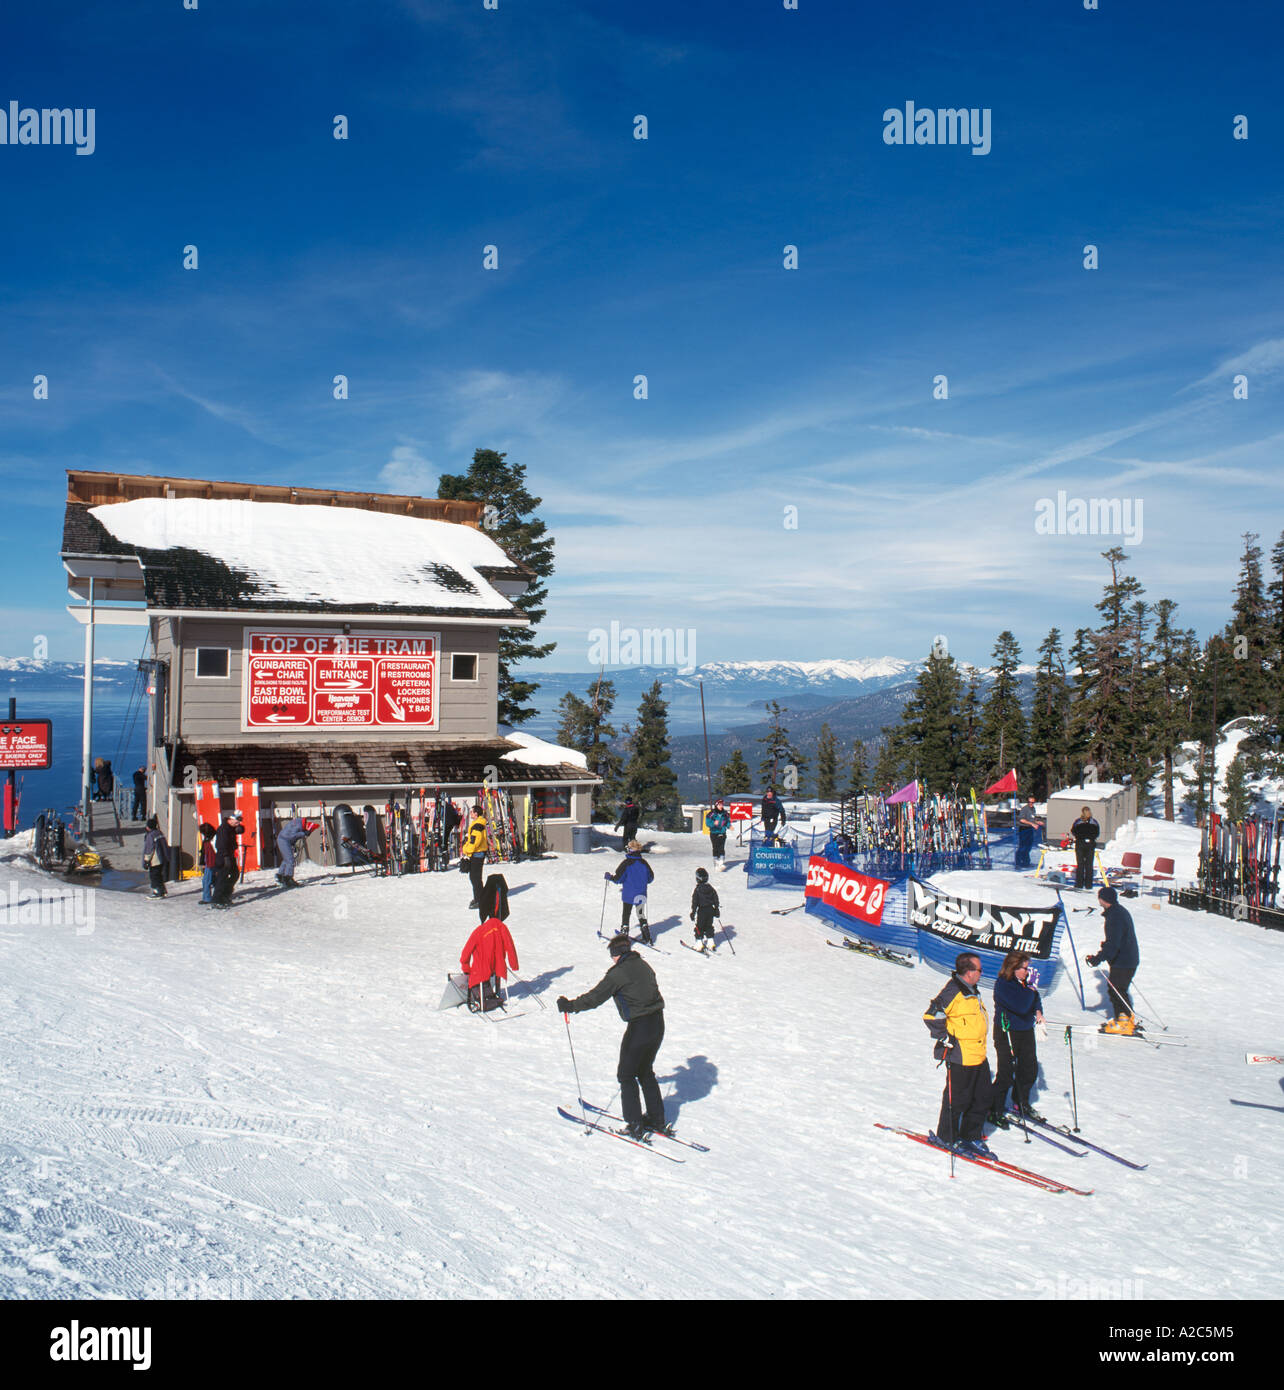 Les skieurs près de la station de téléphérique, Heavenly Ski Area, Lake Tahoe, Californie/Nevada, États-Unis Banque D'Images